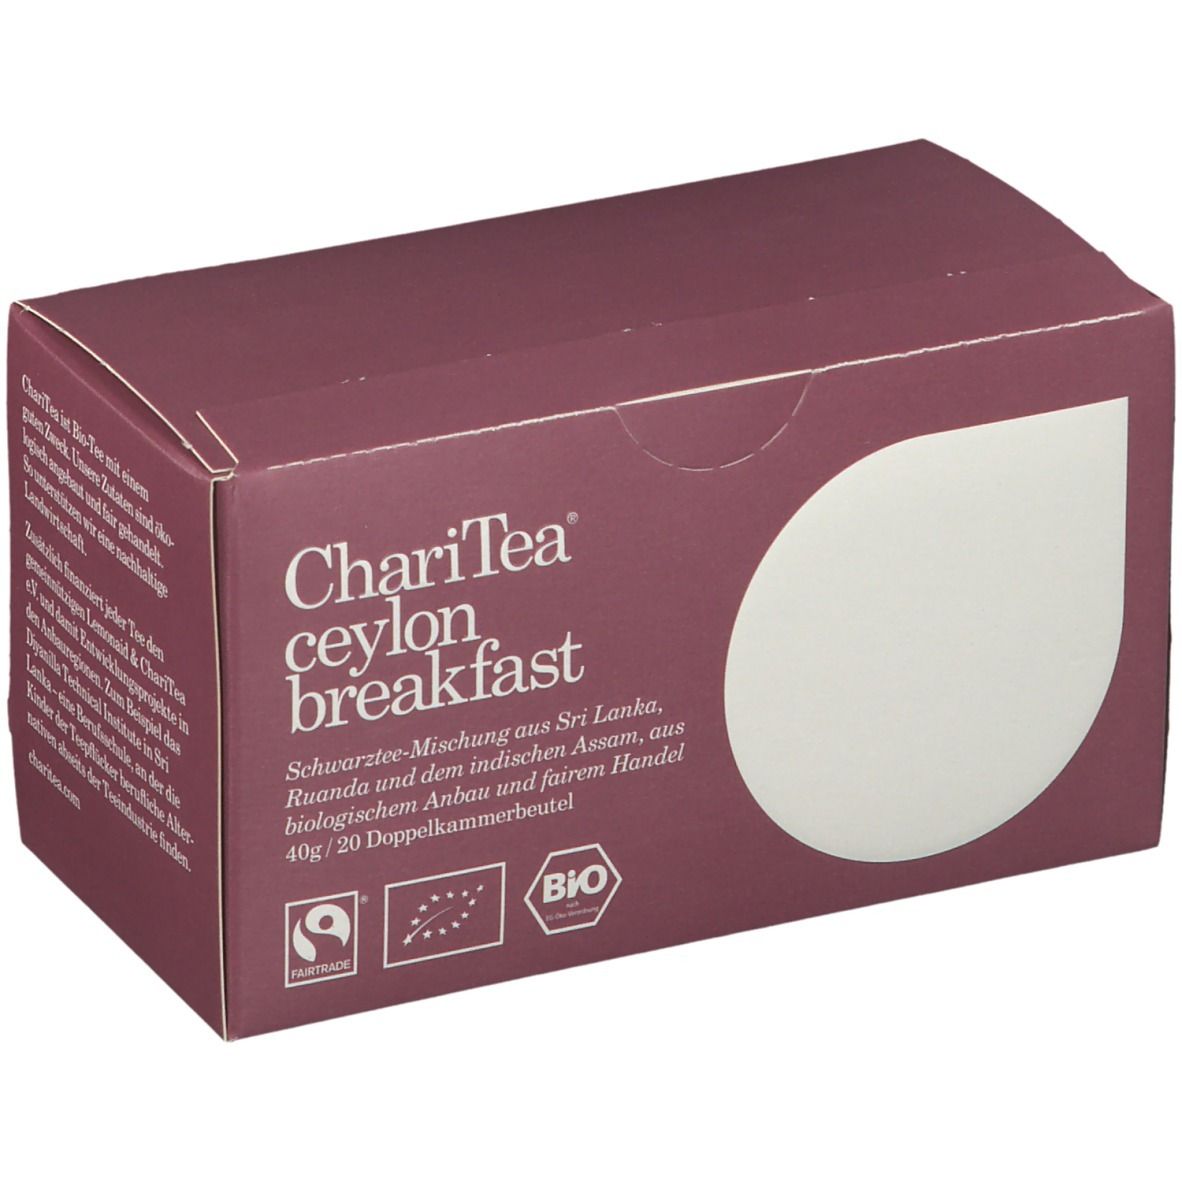 Image of ChariTea® ceylon breakfast